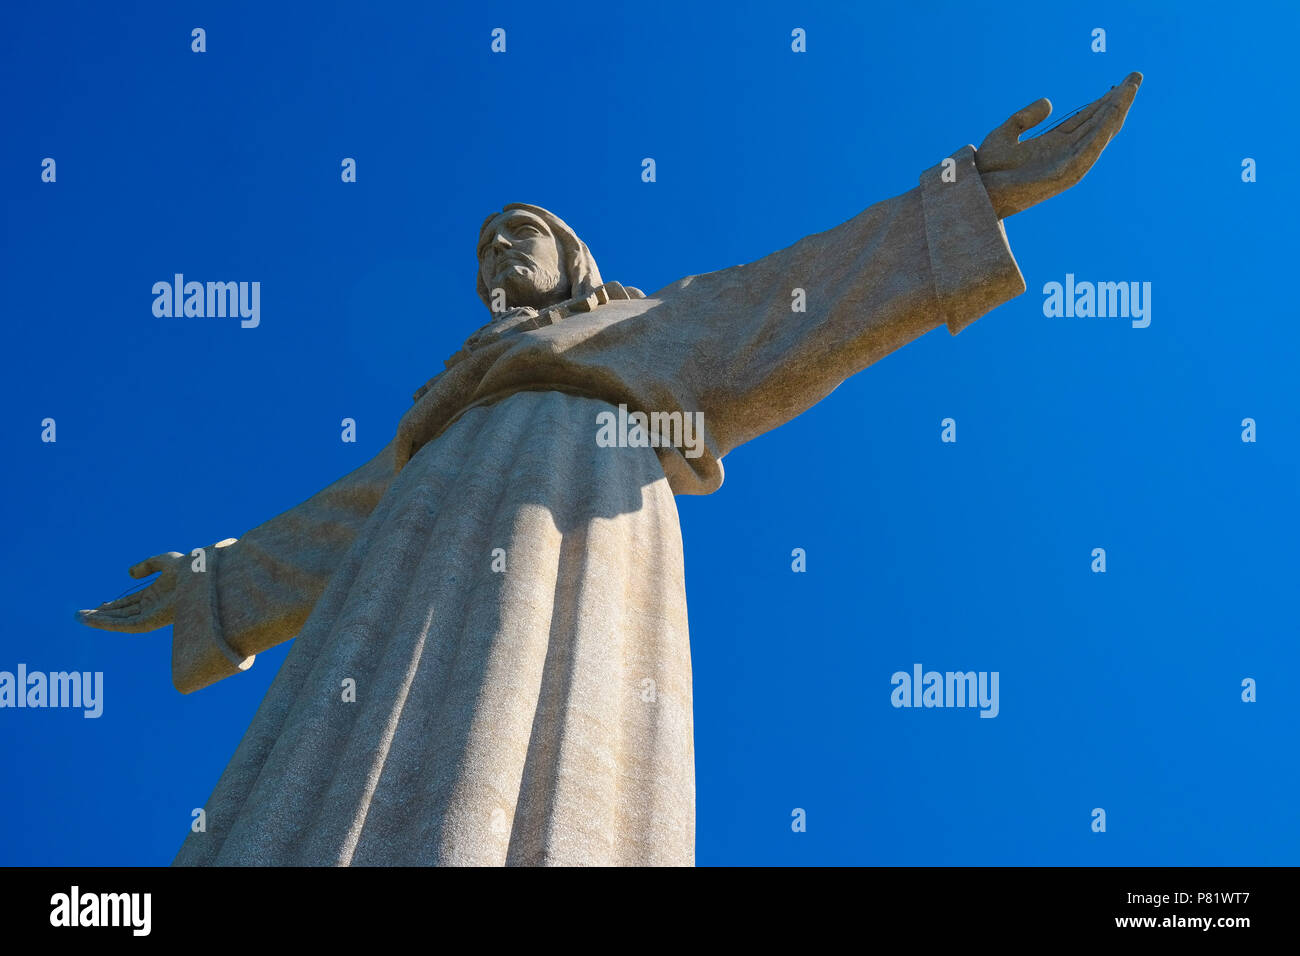 Lisbona, Portogallo. Il monumento Cristo Rei nel quartiere di Almada è alto 103 metri ed è stato inaugurato nel 1959. Foto Stock